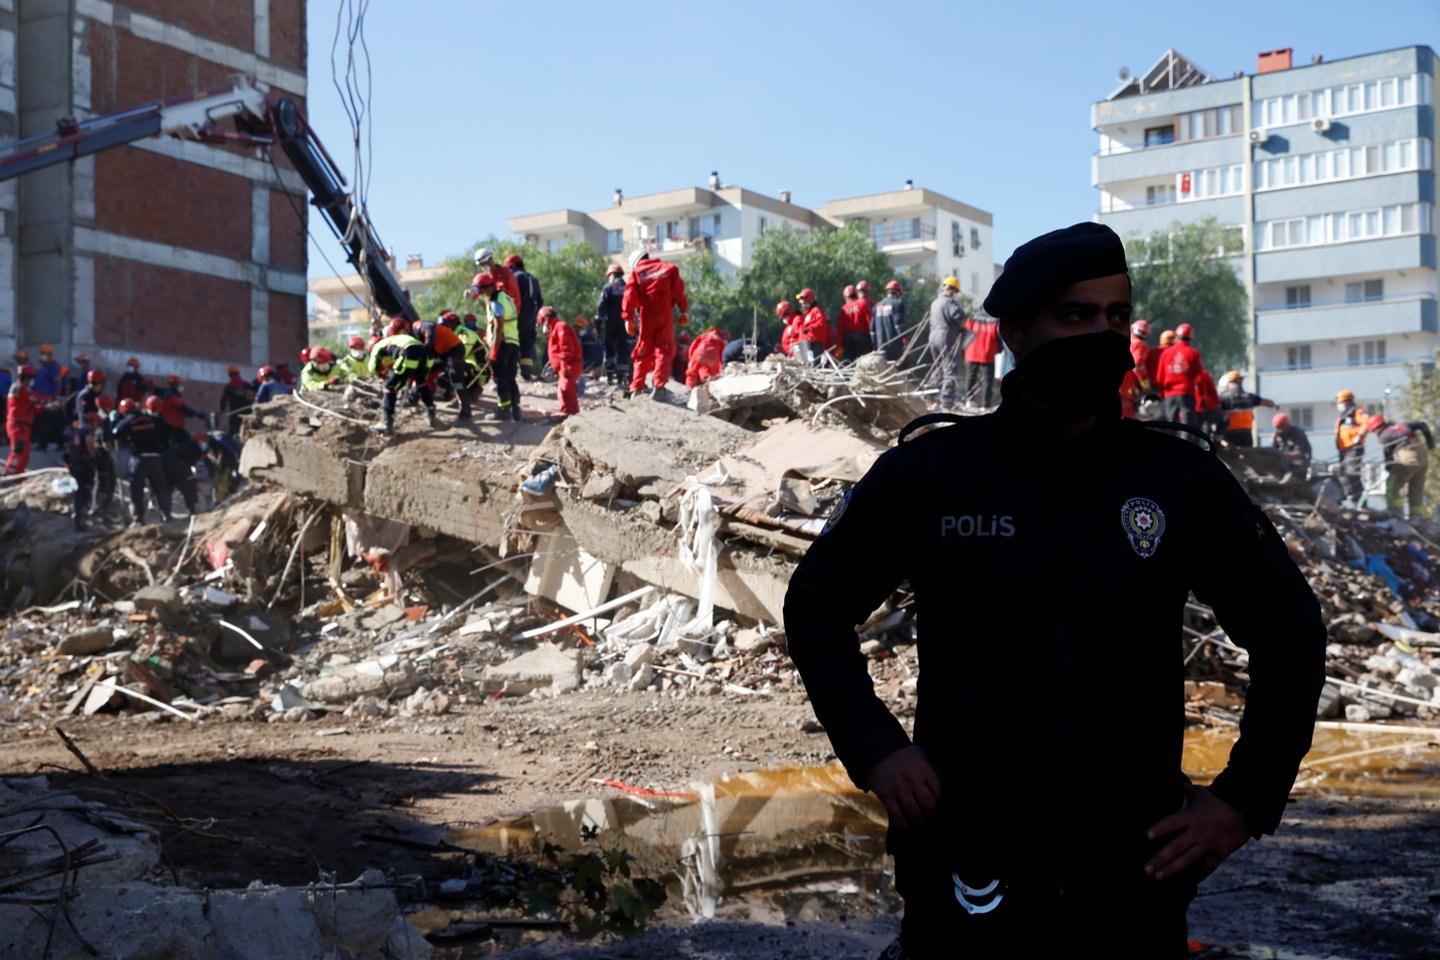  Turkijos vakarinę pakrantę praeitą savaitę supurčiusio stipraus žemės drebėjimo aukų padaugėjo iki 81 žmogaus, pirmadienį pranešė valstybinė Anatolijos naujienų agentūra.<br> Reuters/Scanpix nuotr.